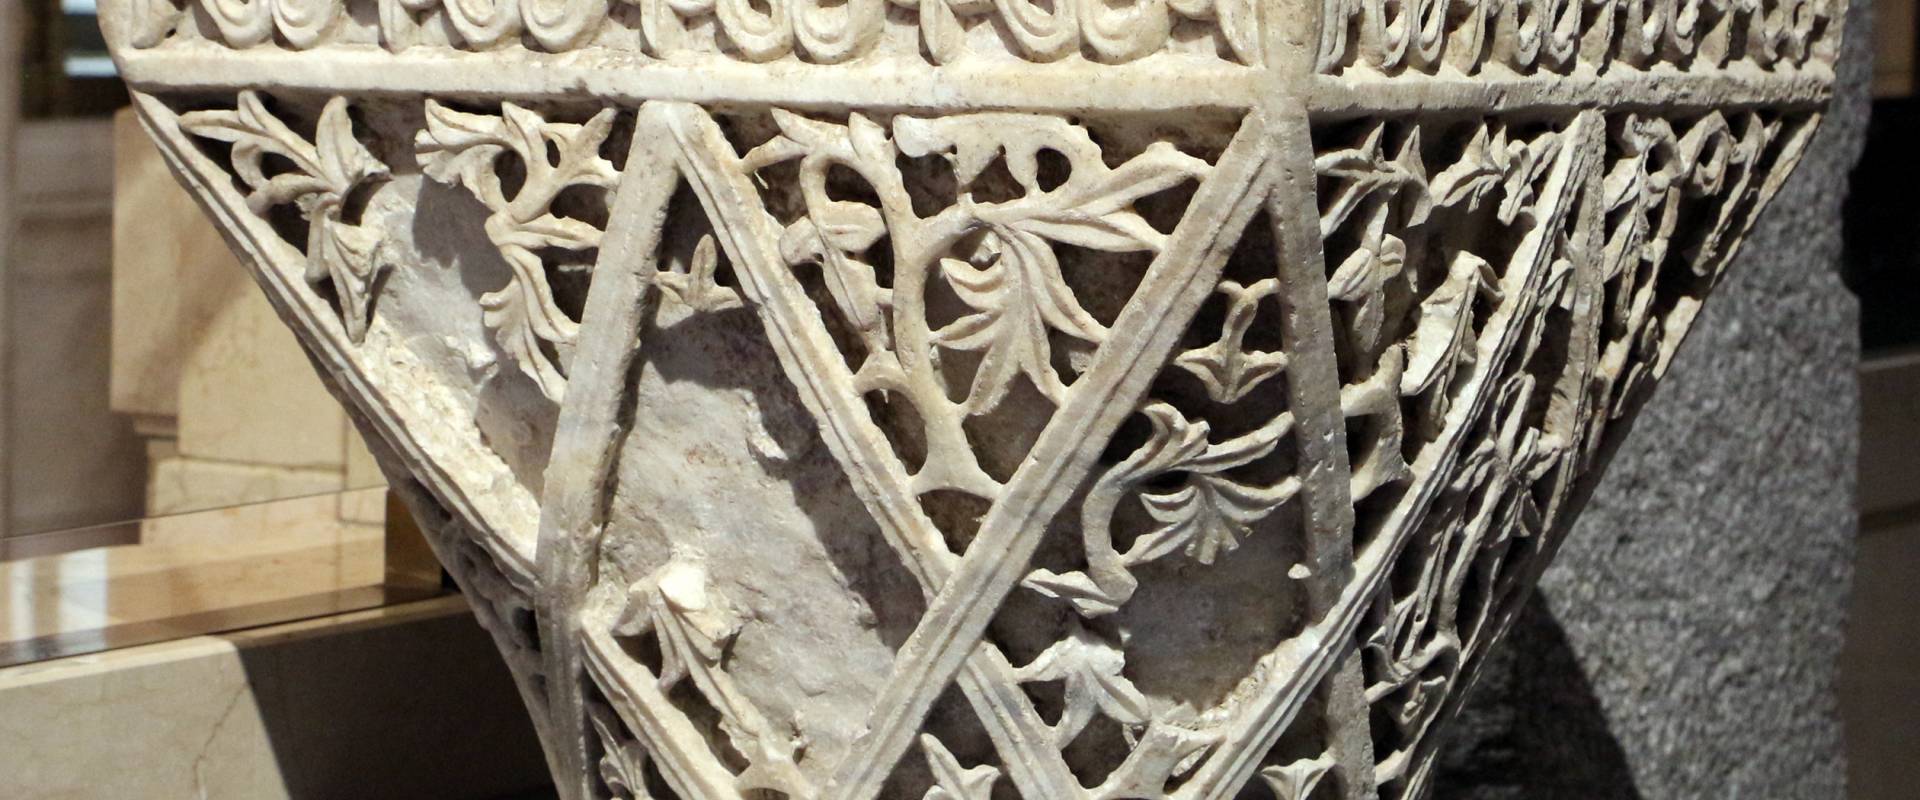 Area costantinopolitana, capitello imposta a paniere, VI secolo (ravenna, museo nazionale) 03 photo by Sailko